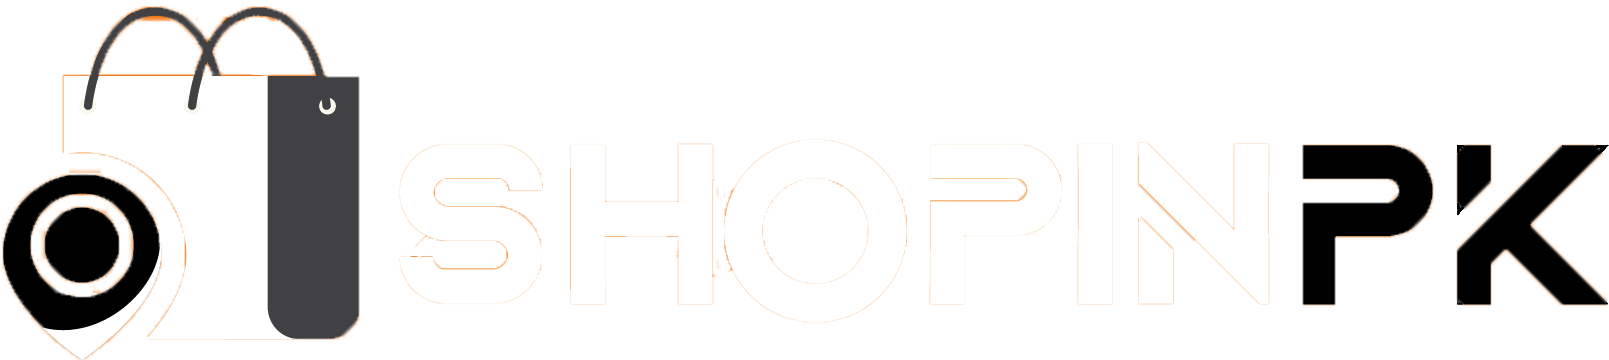 logo- shopinpk